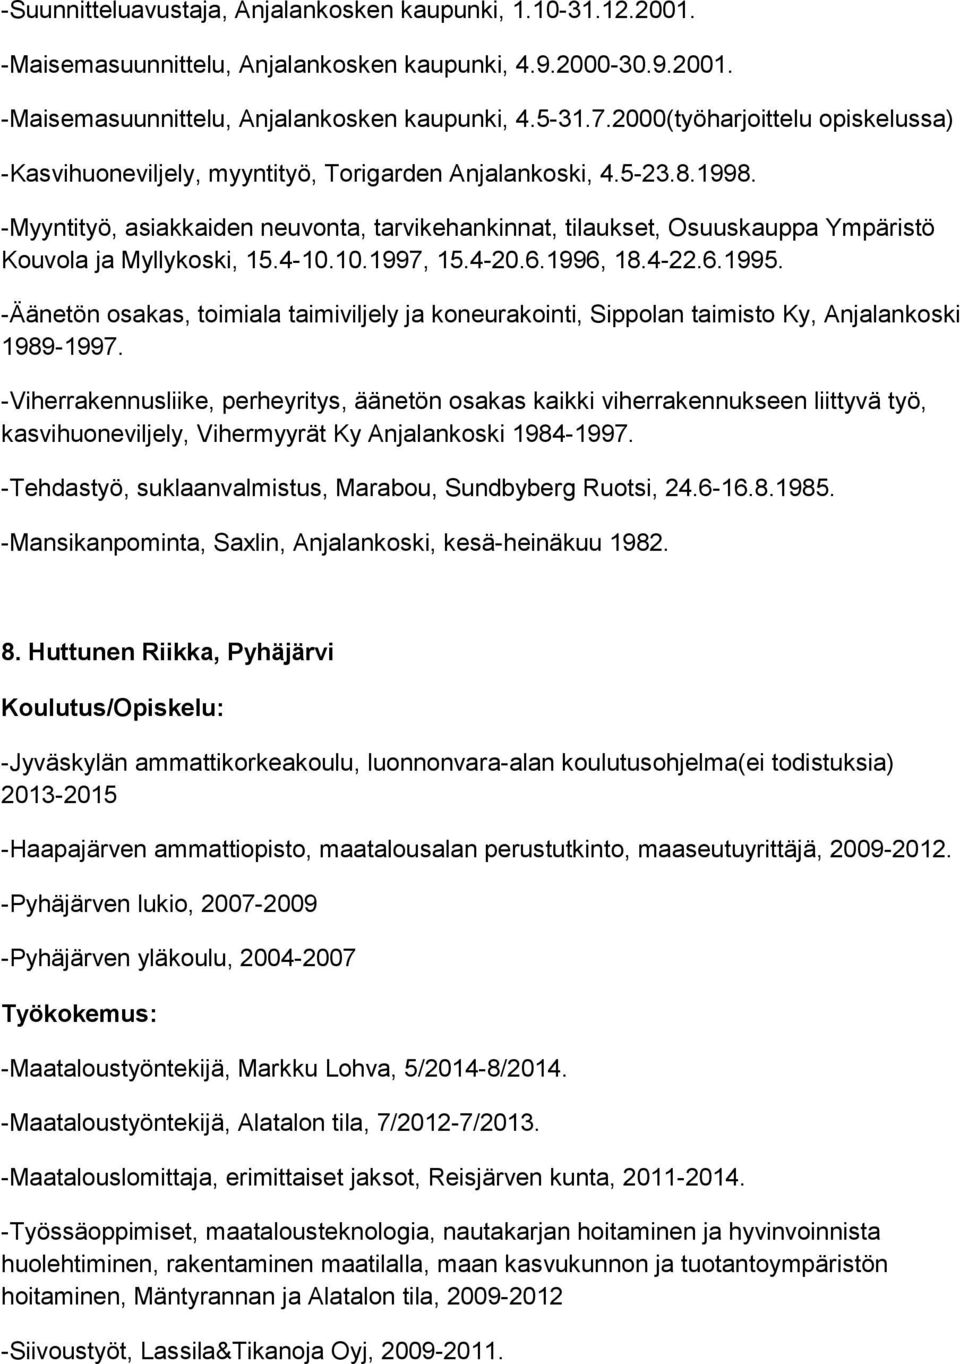 -Myyntityö, asiakkaiden neuvonta, tarvikehankinnat, tilaukset, Osuuskauppa Ympäristö Kouvola ja Myllykoski, 15.4-10.10.1997, 15.4-20.6.1996, 18.4-22.6.1995.